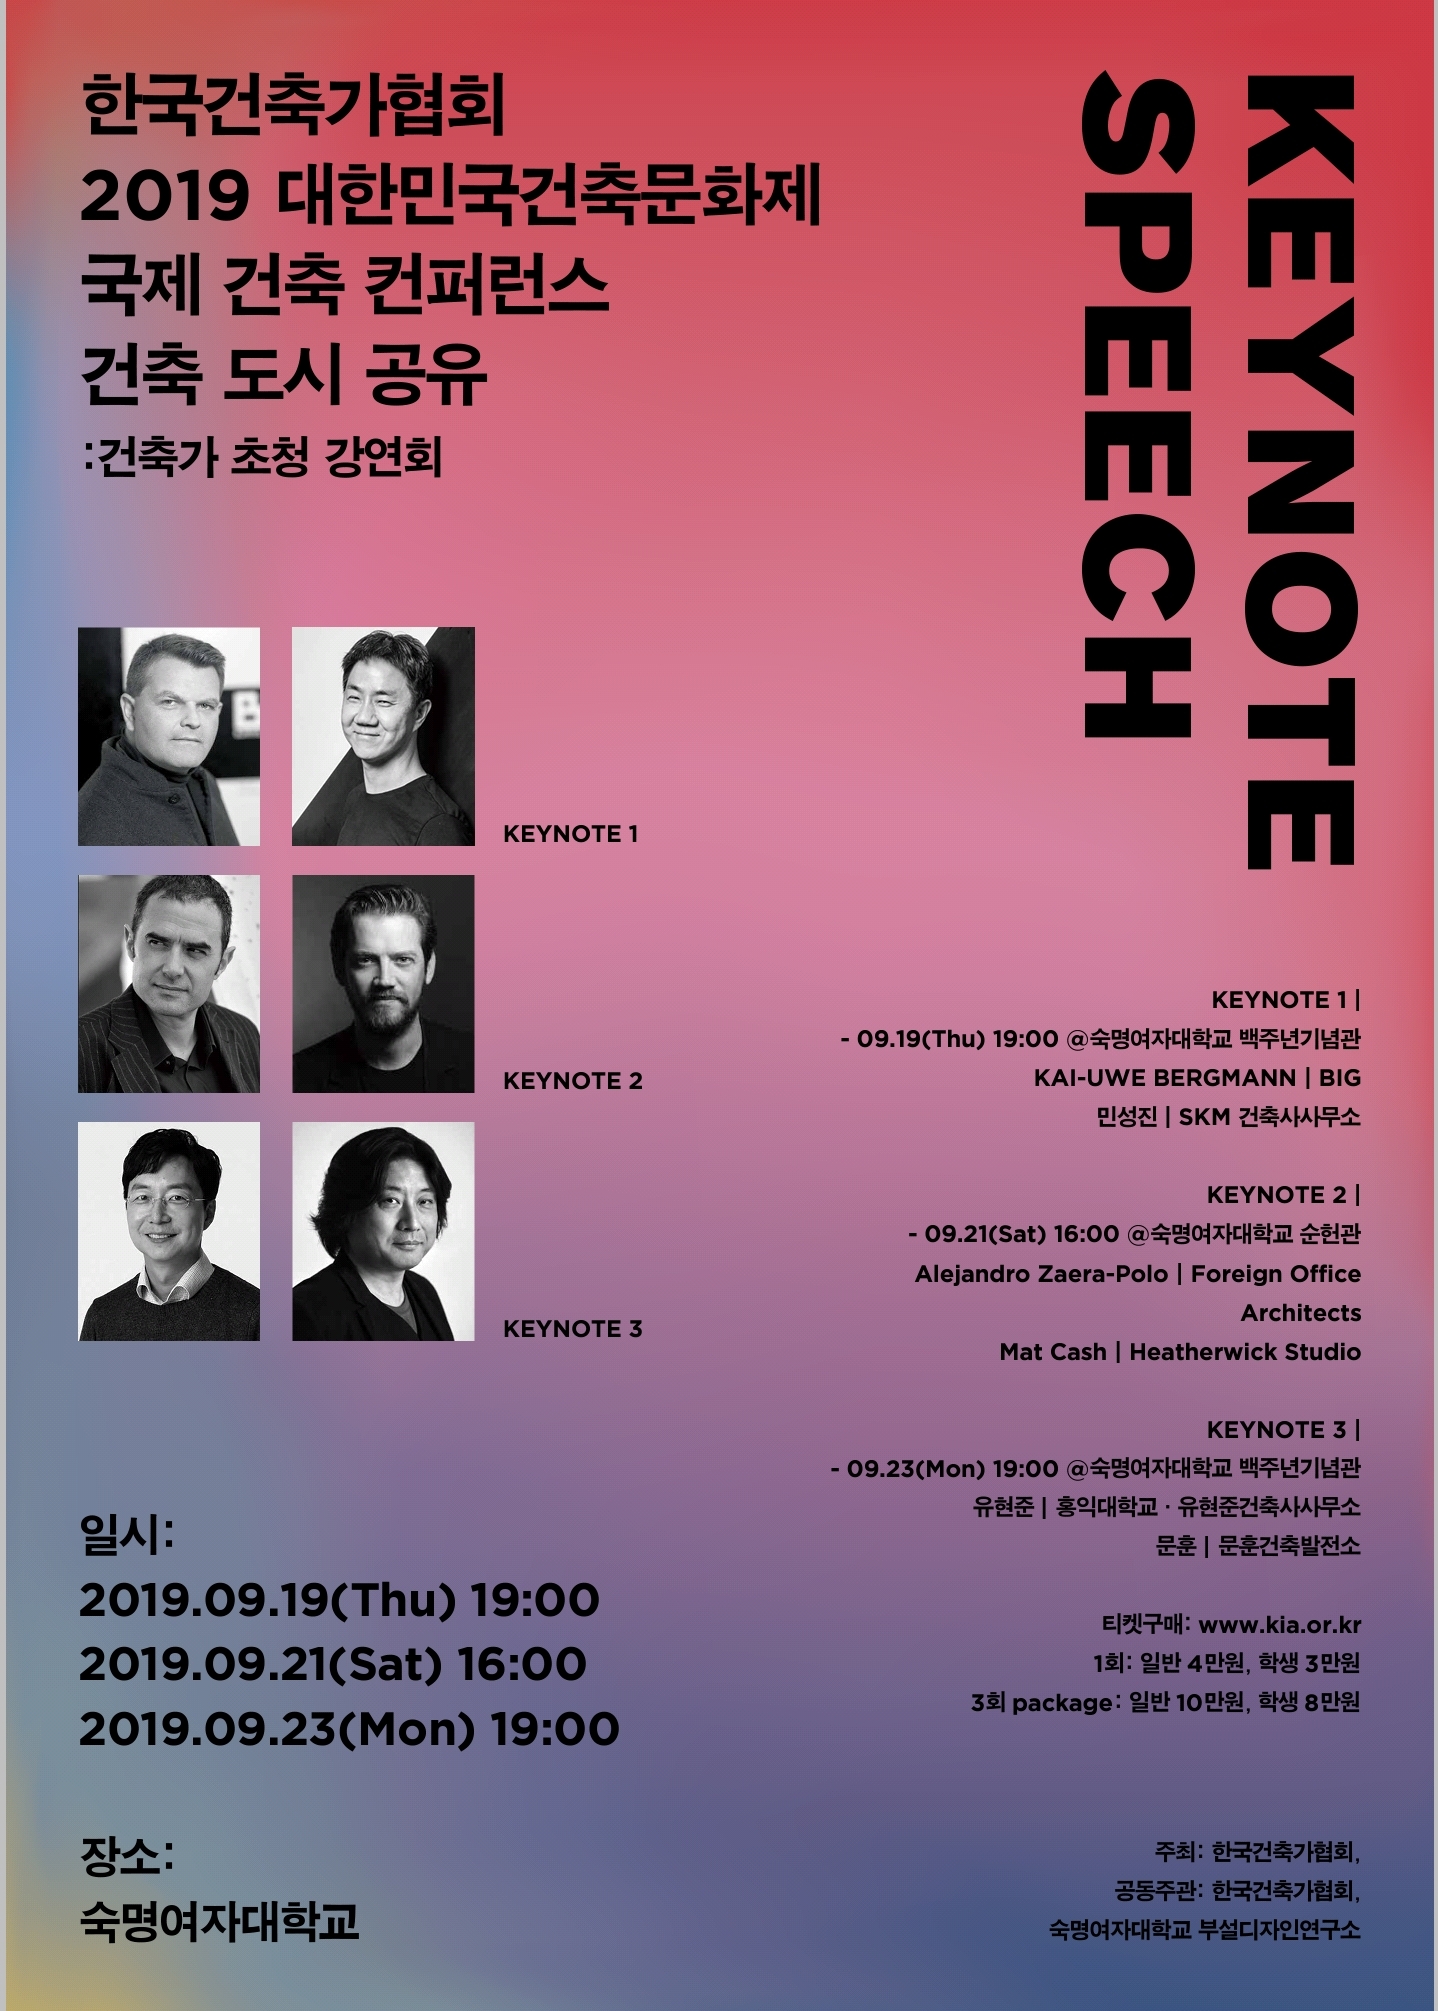 한국건축가협회 2019대한민국건축문화제 국제 건축 컨퍼런스 건축, 도시, 공유